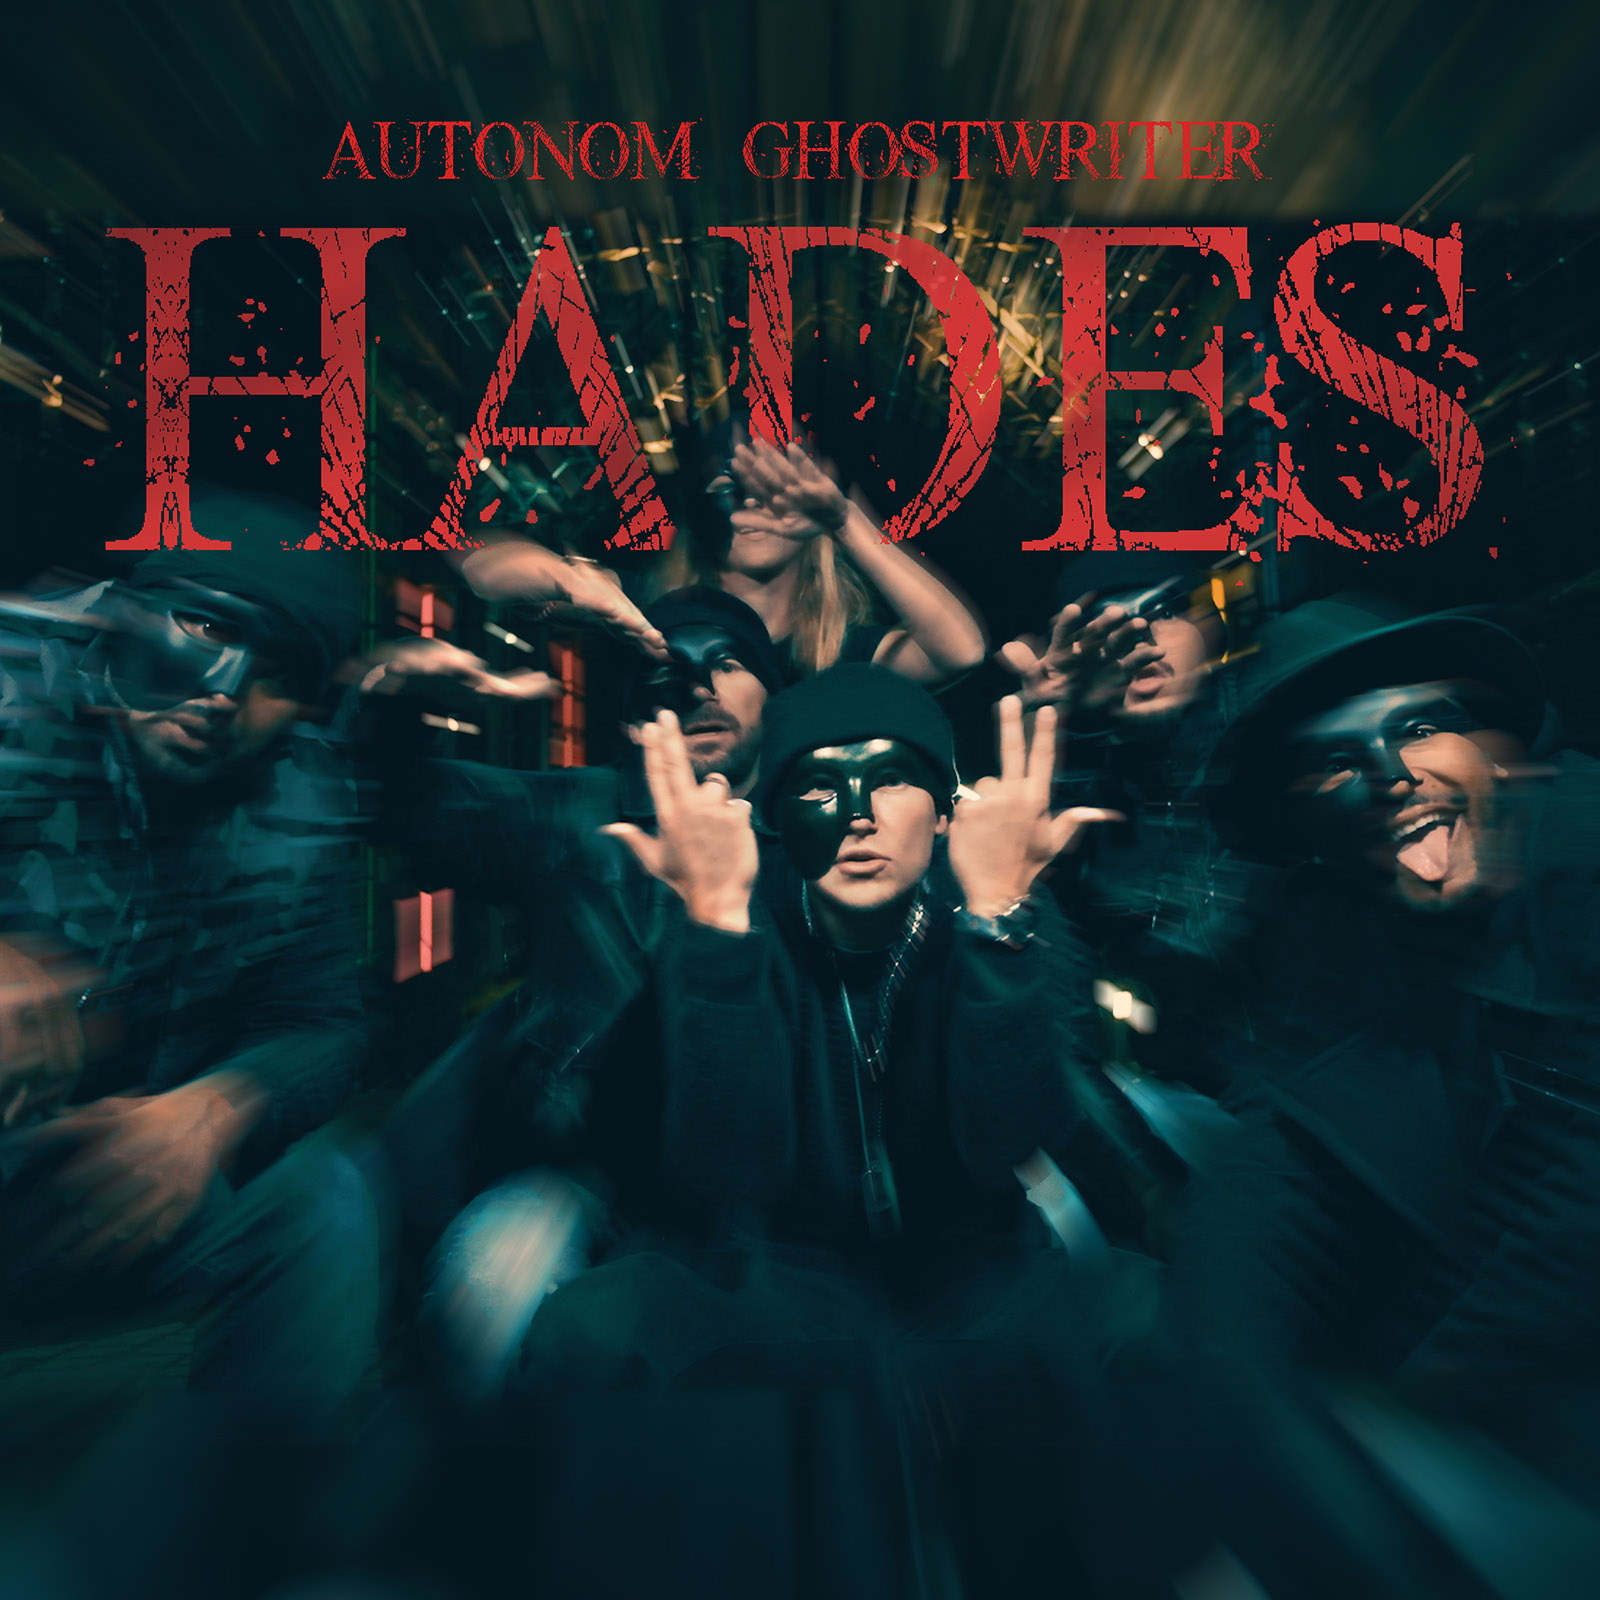 Autonom Ghostwriter - ”Hades”